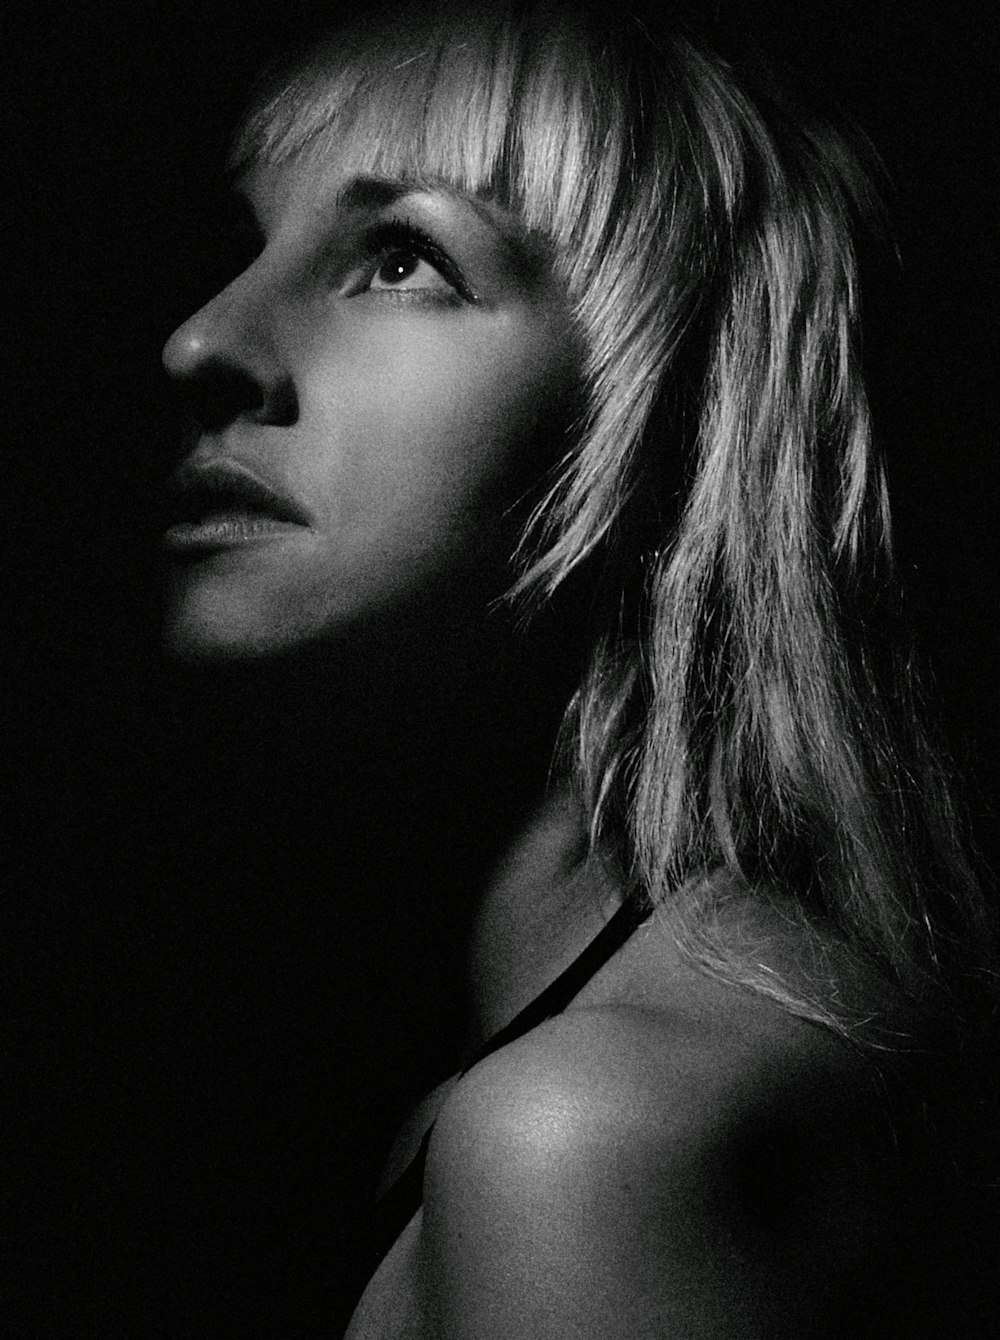 Una foto en blanco y negro de la cara de una mujer